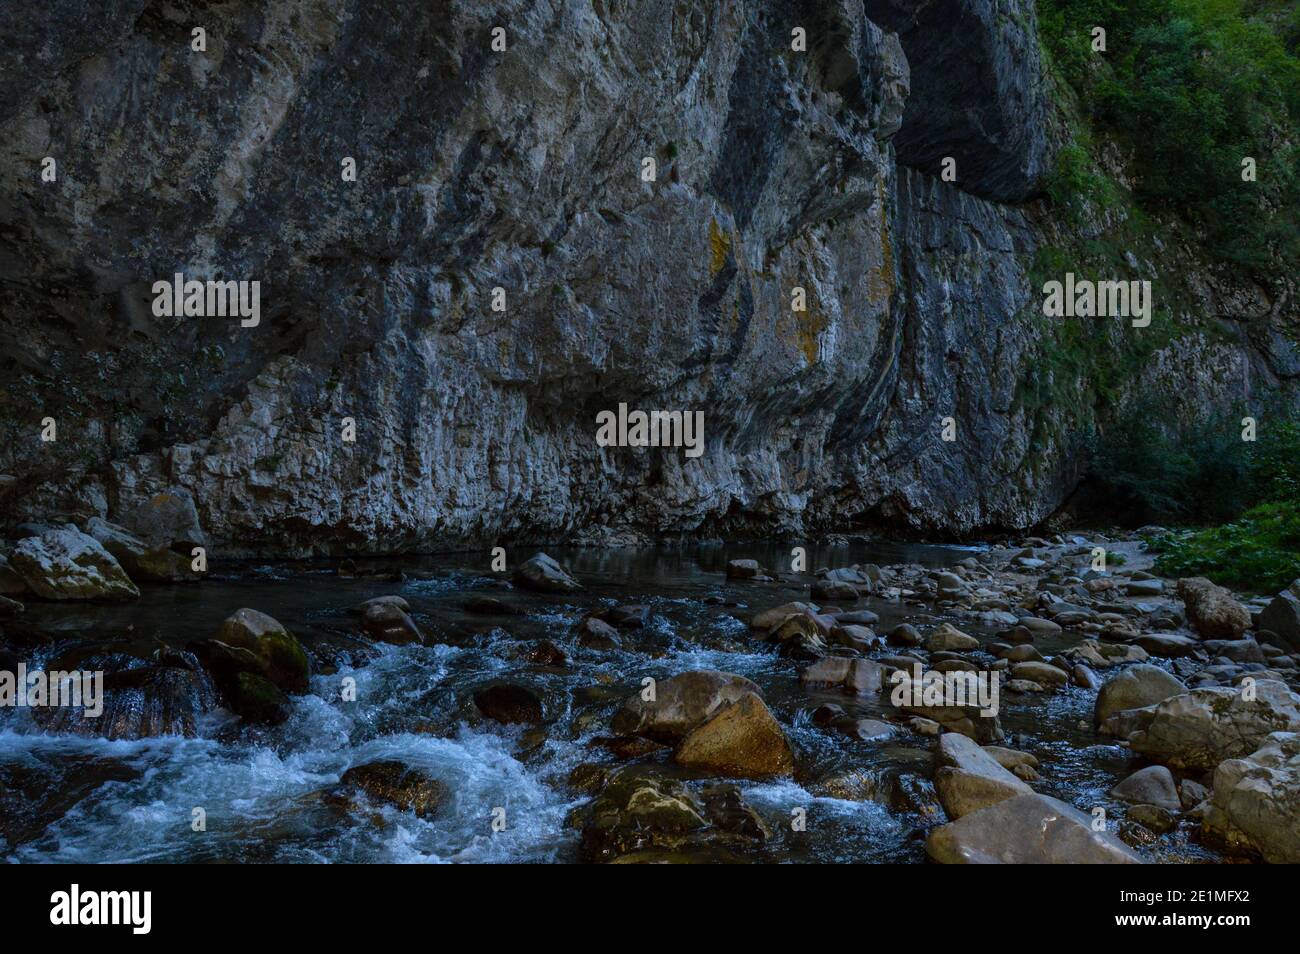 Paisaje natural prístino con río que fluye libremente a través de las rocas erosionadas en las Gorges de Sohodol (Cheile Sohodolului), en el condado de Gorj Rumania Foto de stock